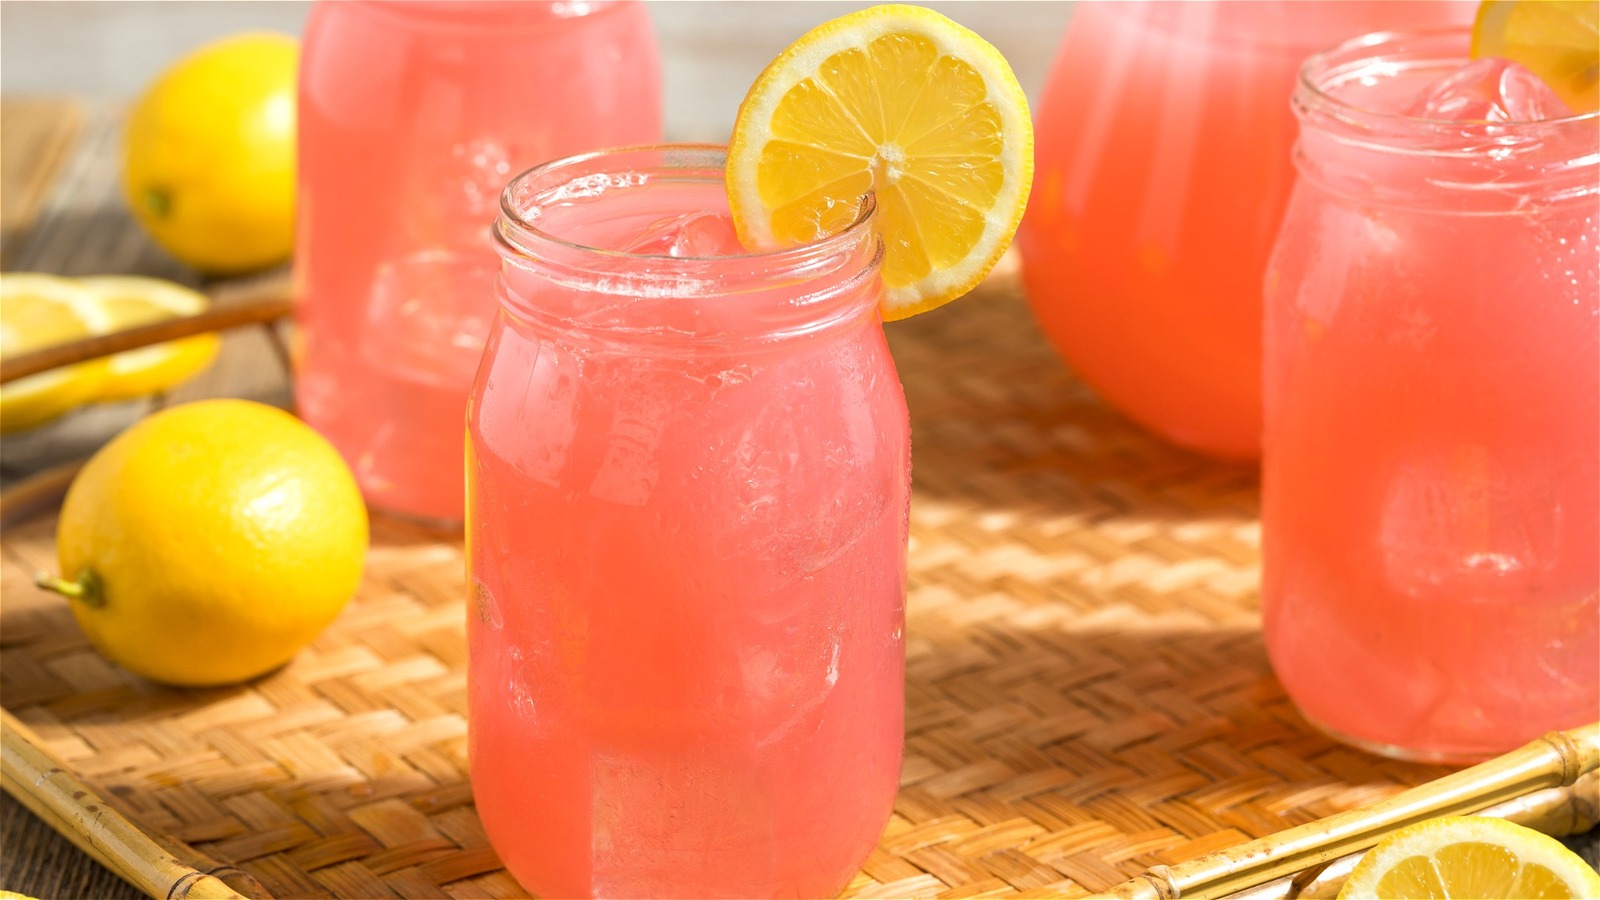 Does Pink Lemonade Have A Unique Flavor?